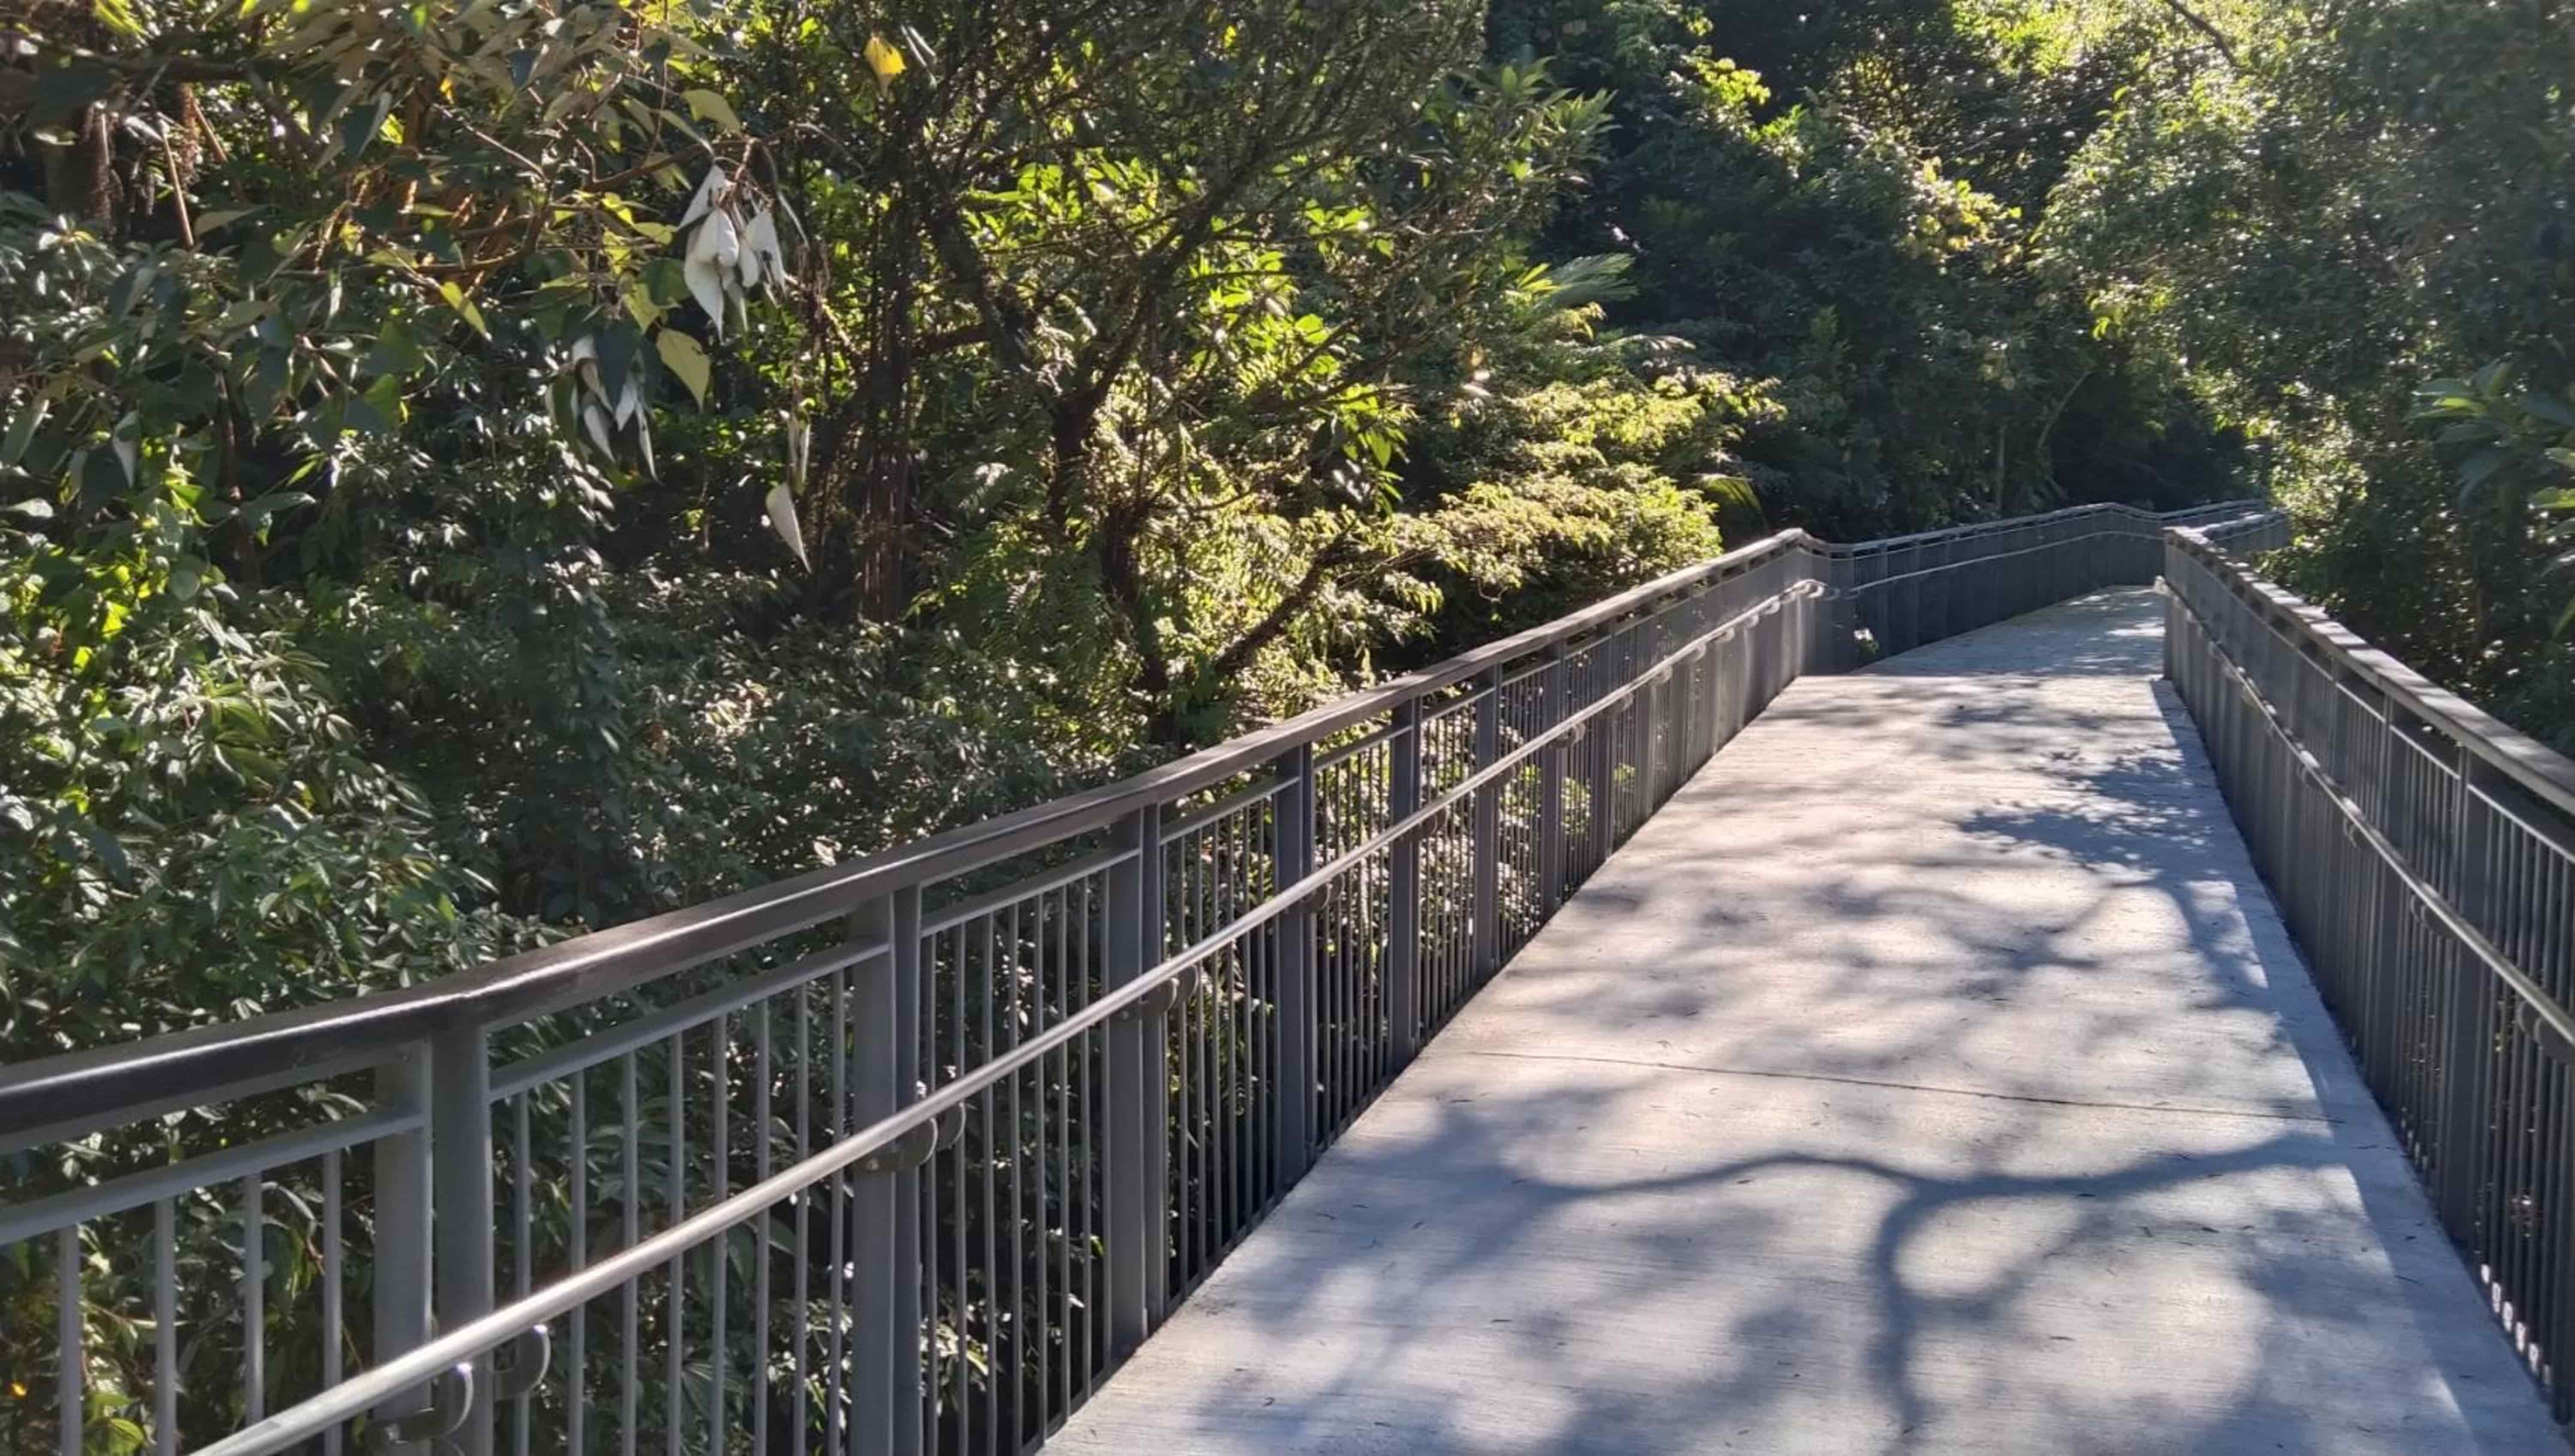 十分友善步道以平緩的坡道取代階梯，讓民眾能更輕易接觸大自然